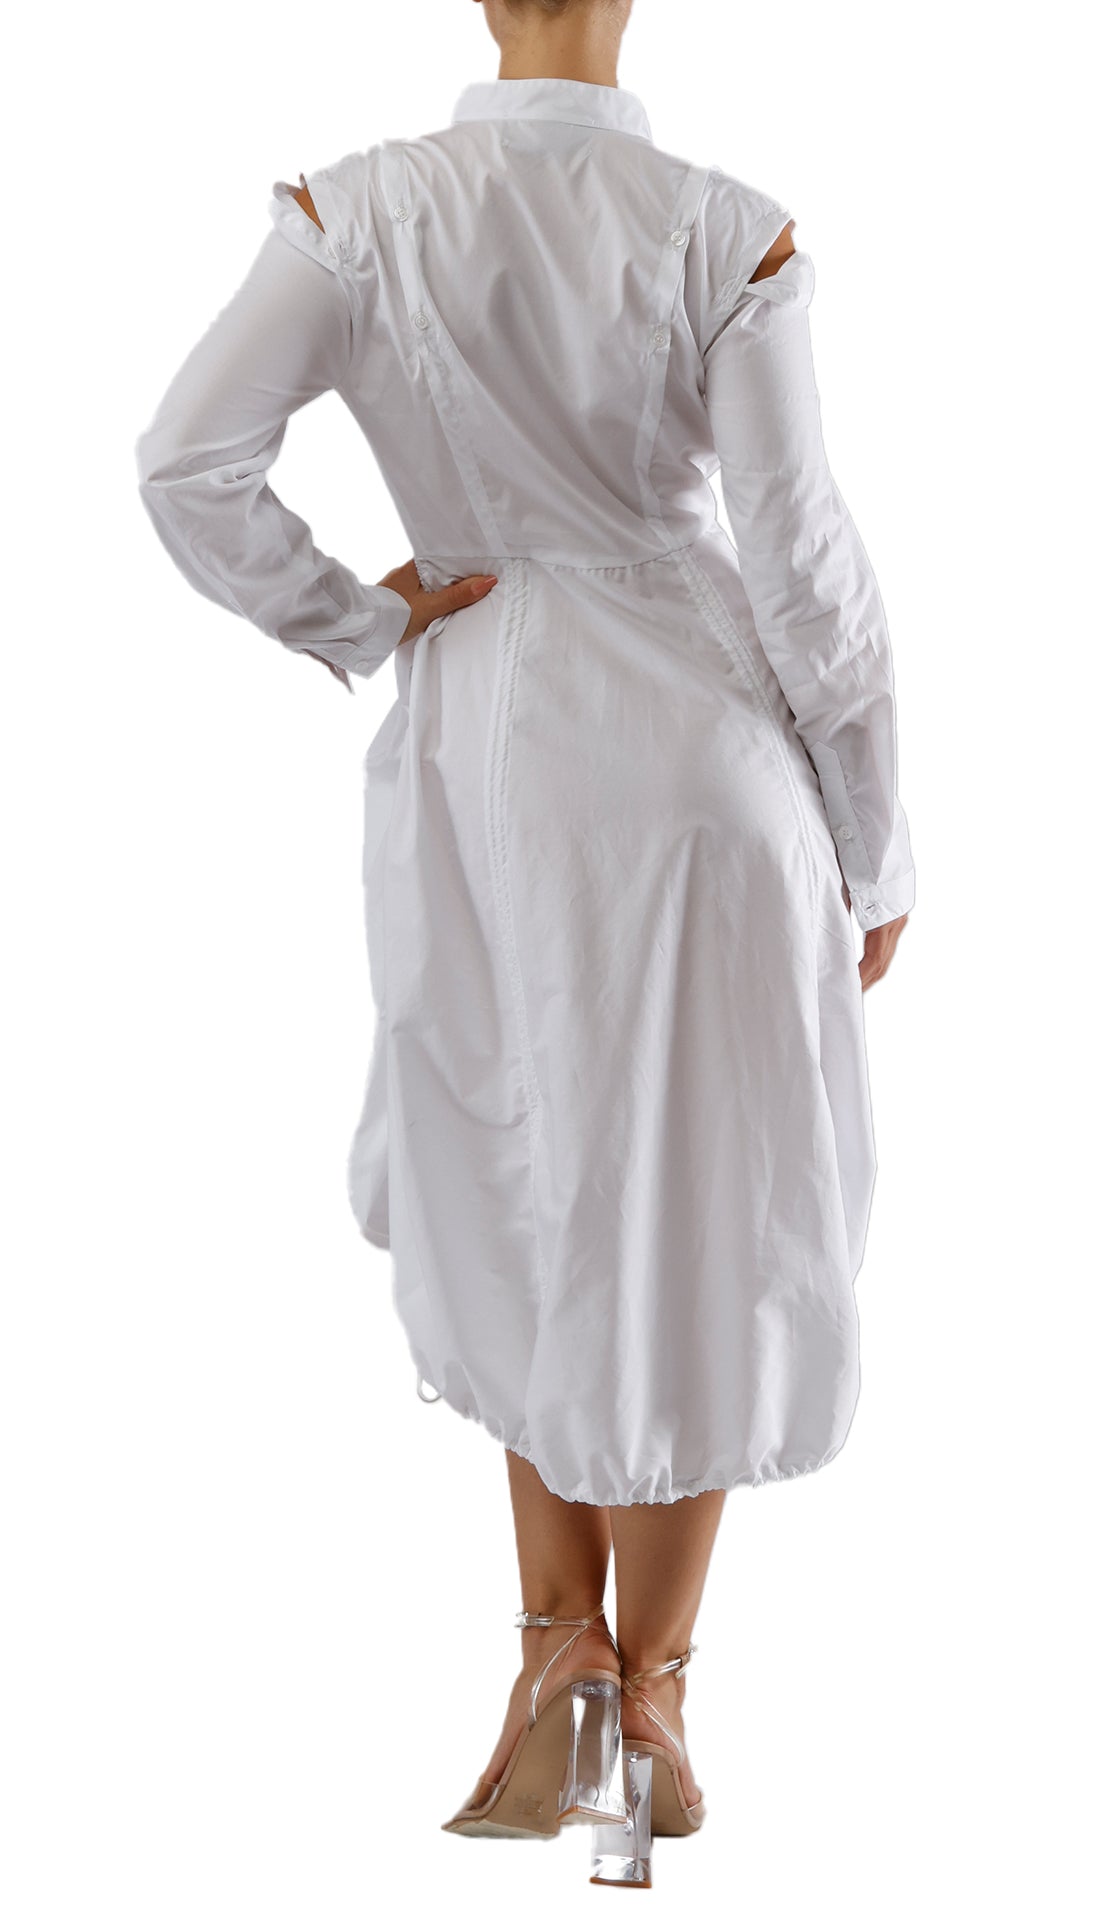 NIKITA DRESS - WHITE